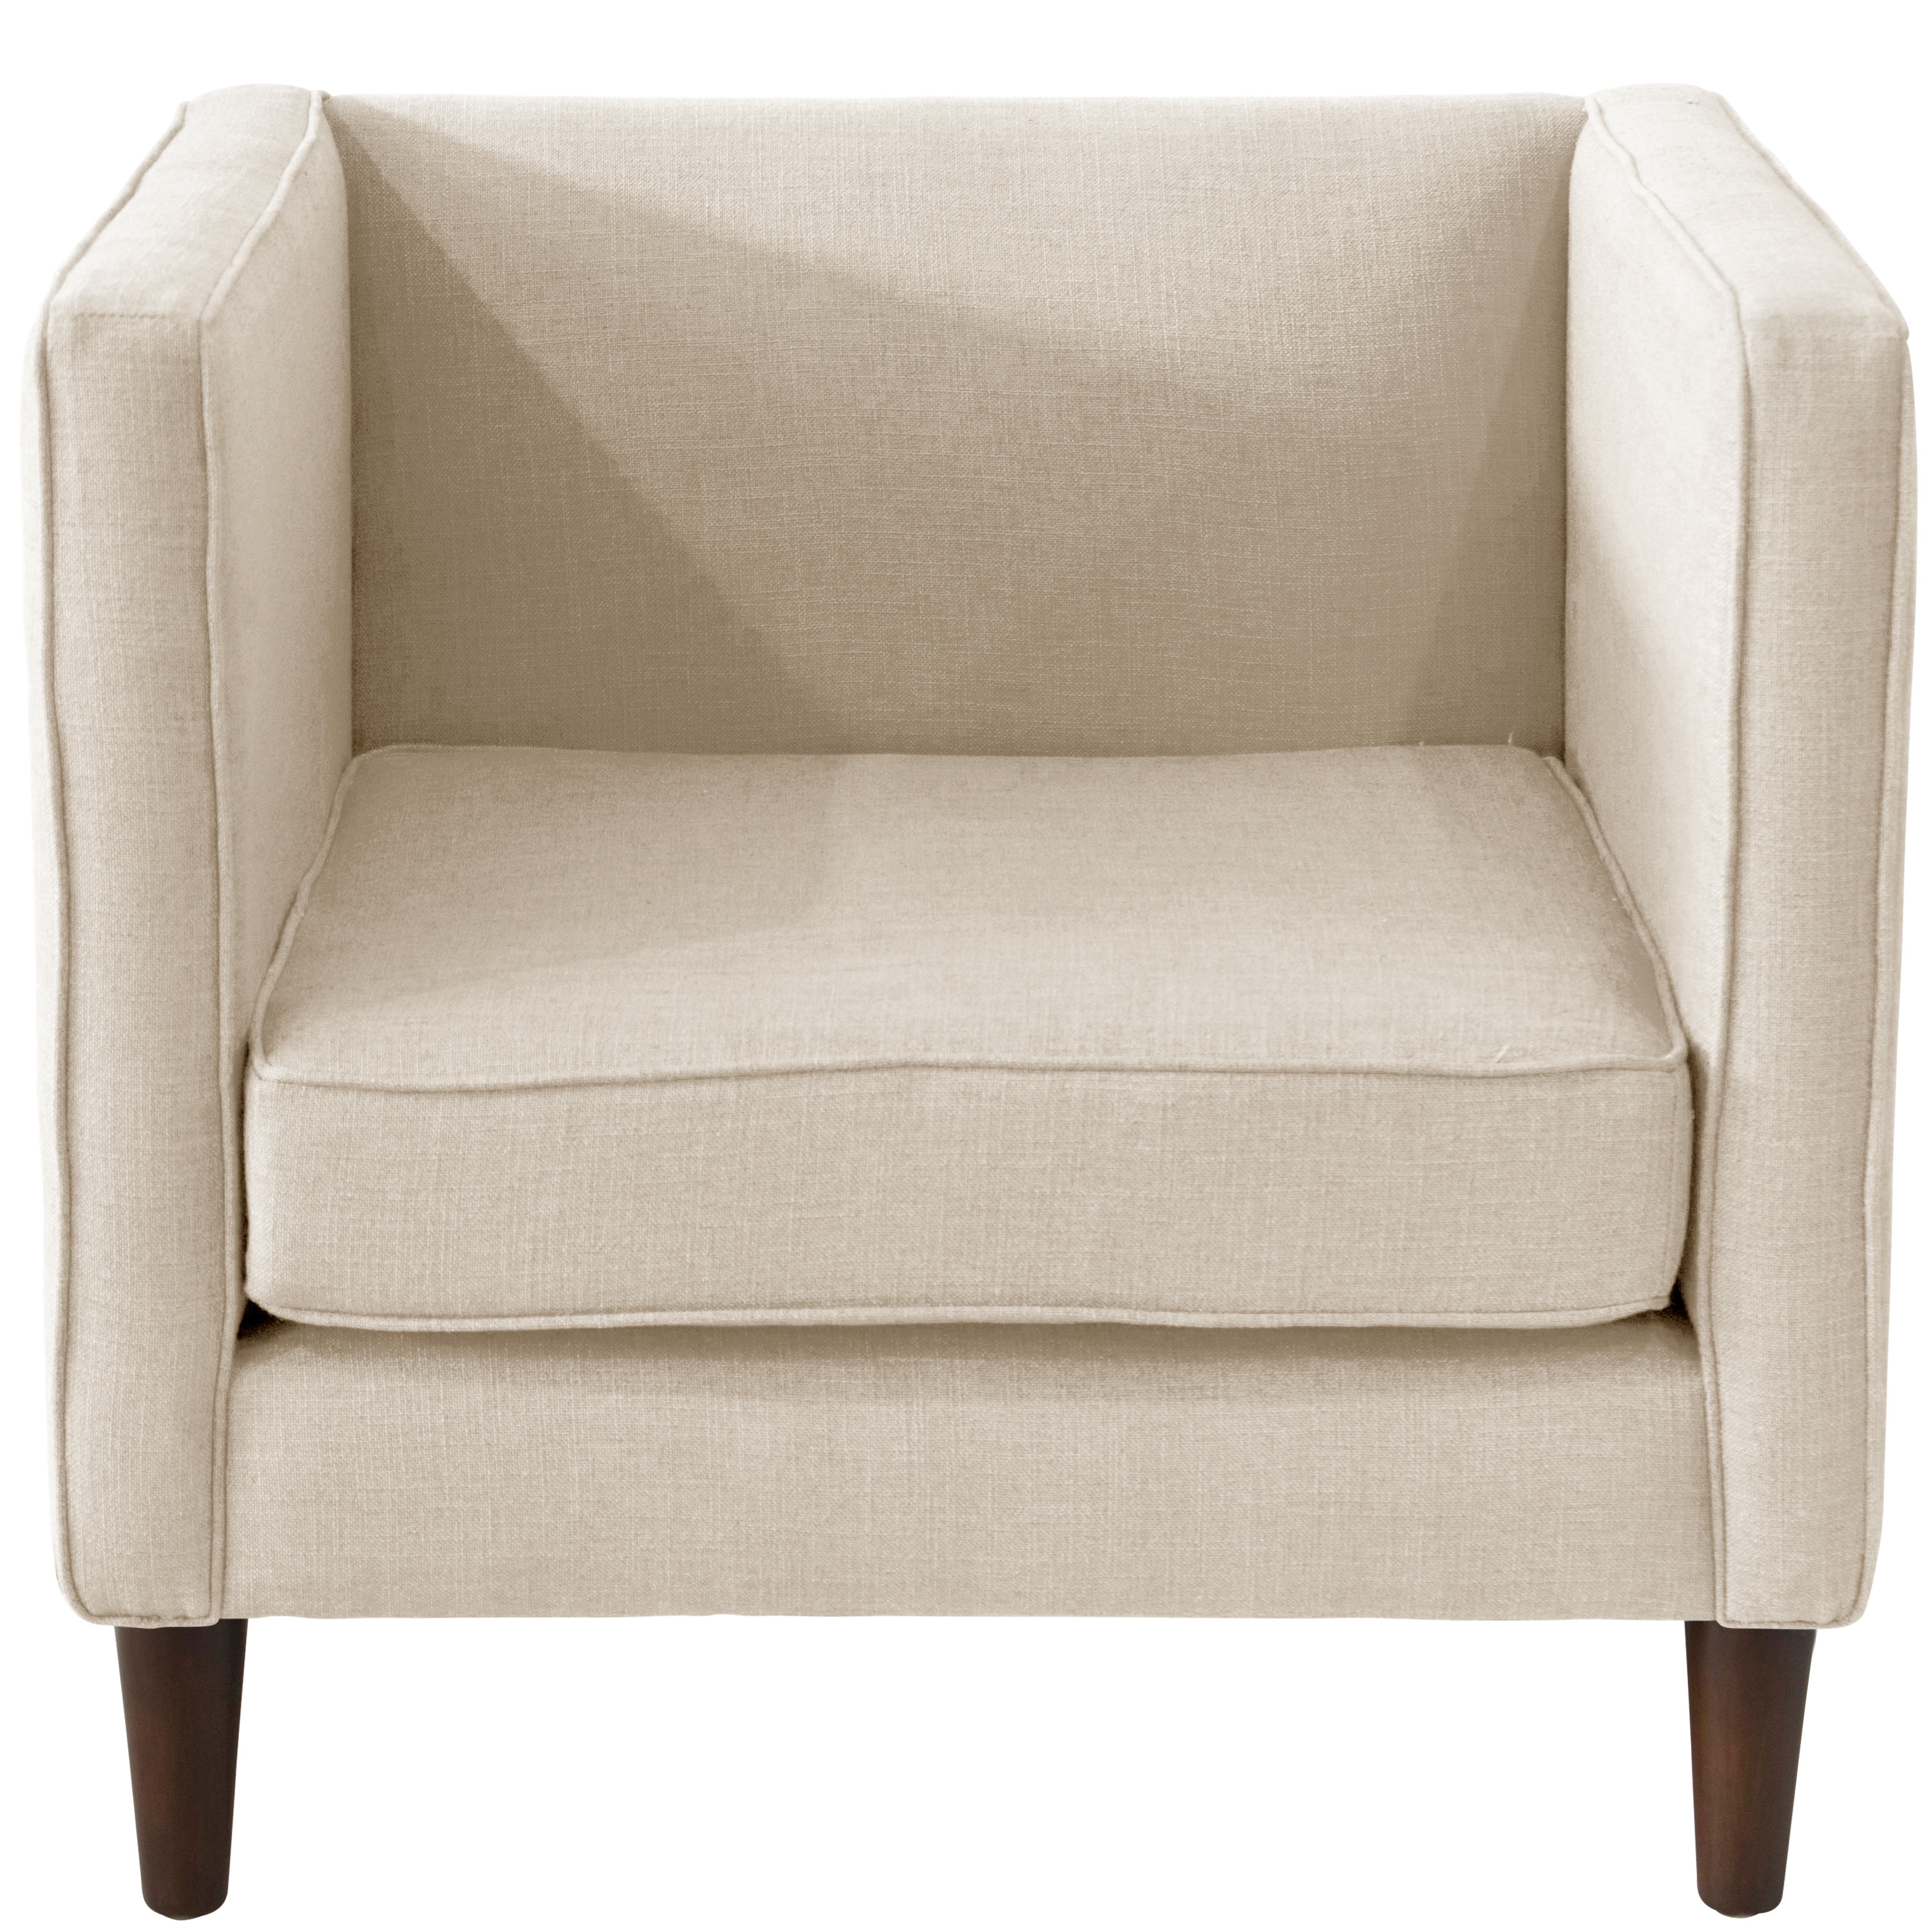 Bucktown Chair in Zuma White - Image 1